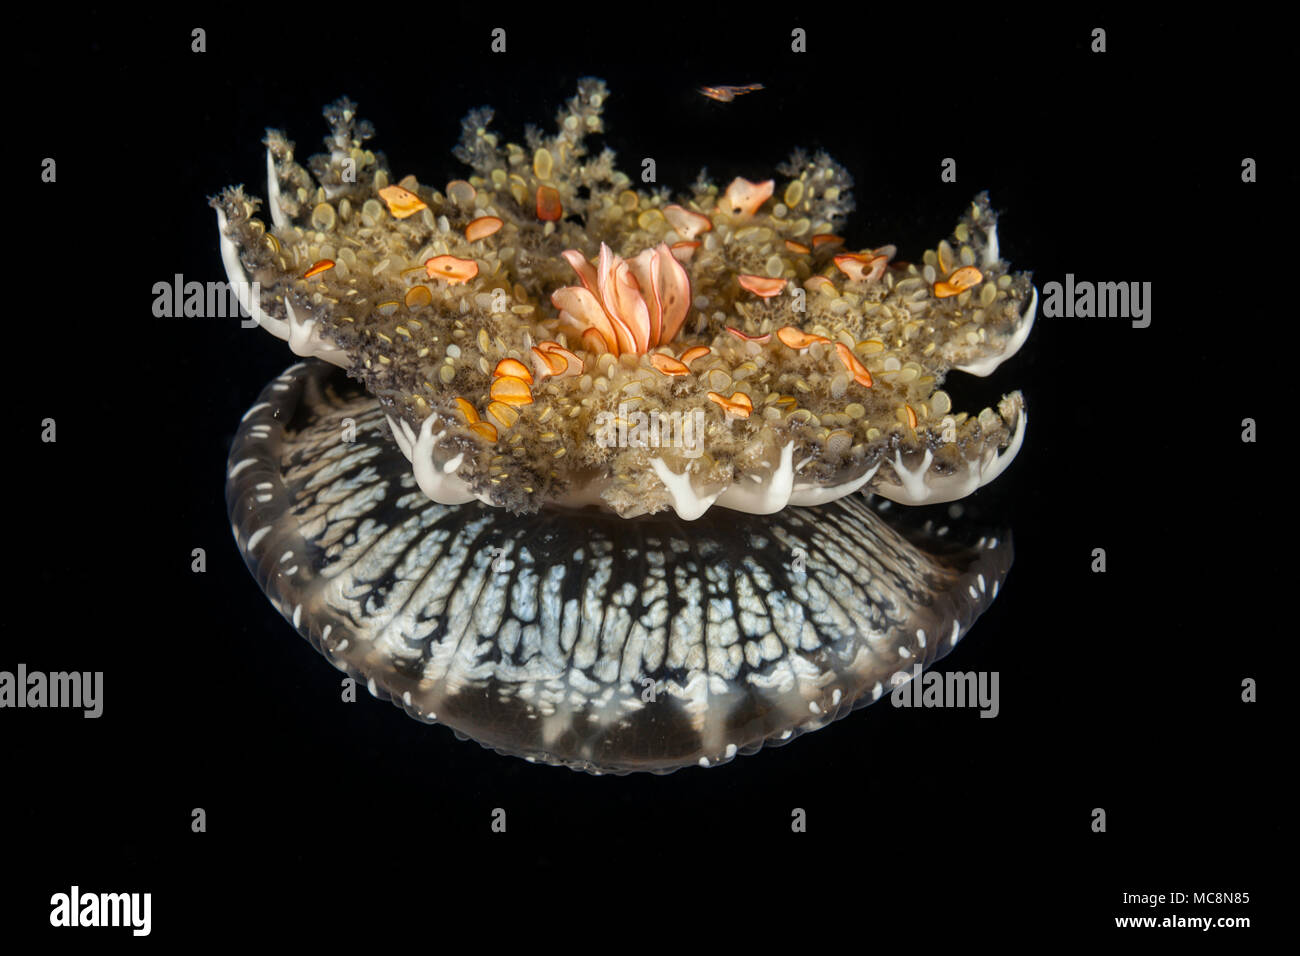 Imitando è parente stretto Le attinie, questo capovolto meduse, Cassiopea medusae, è spesso visto in appoggio, bell giù, i tentacoli su, Foto Stock